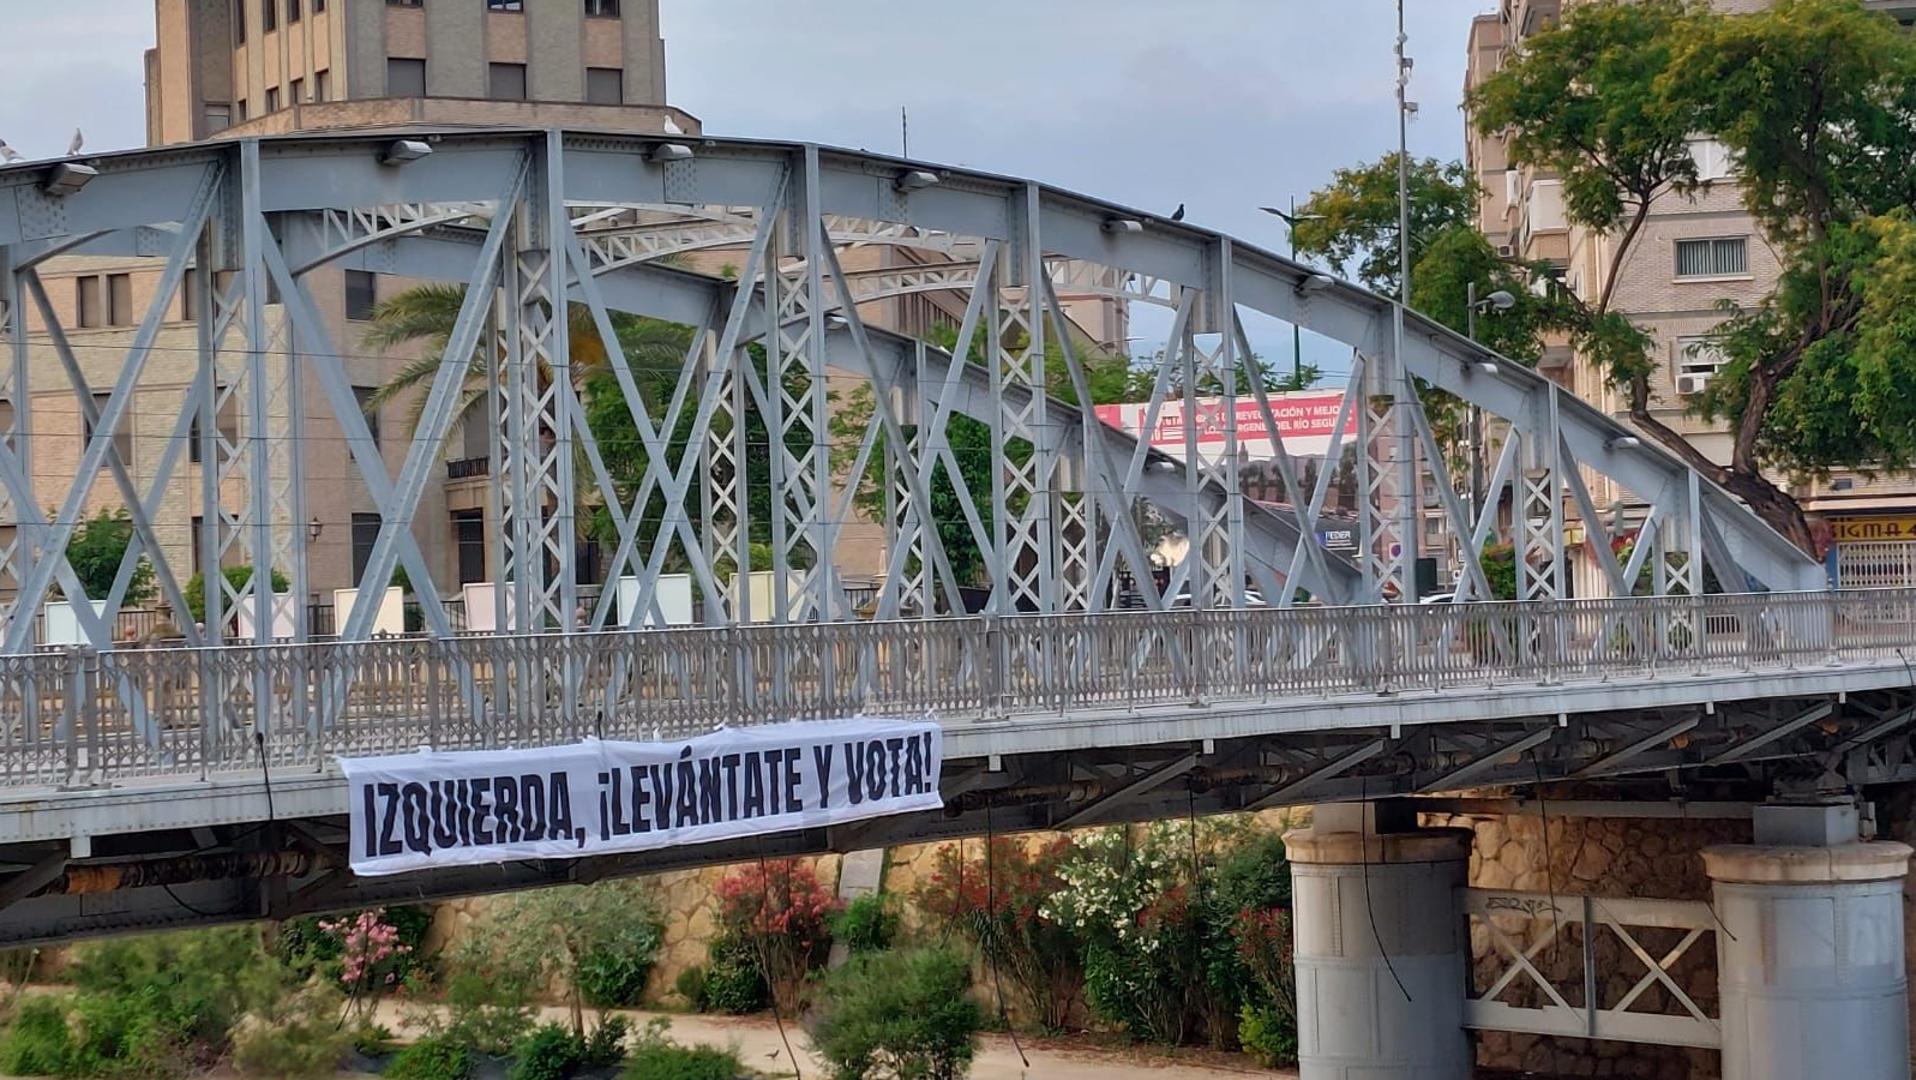 Una pancarta sobre el Puente de Hierro de Murcia llama a la movilización de la izquierda el 28-M